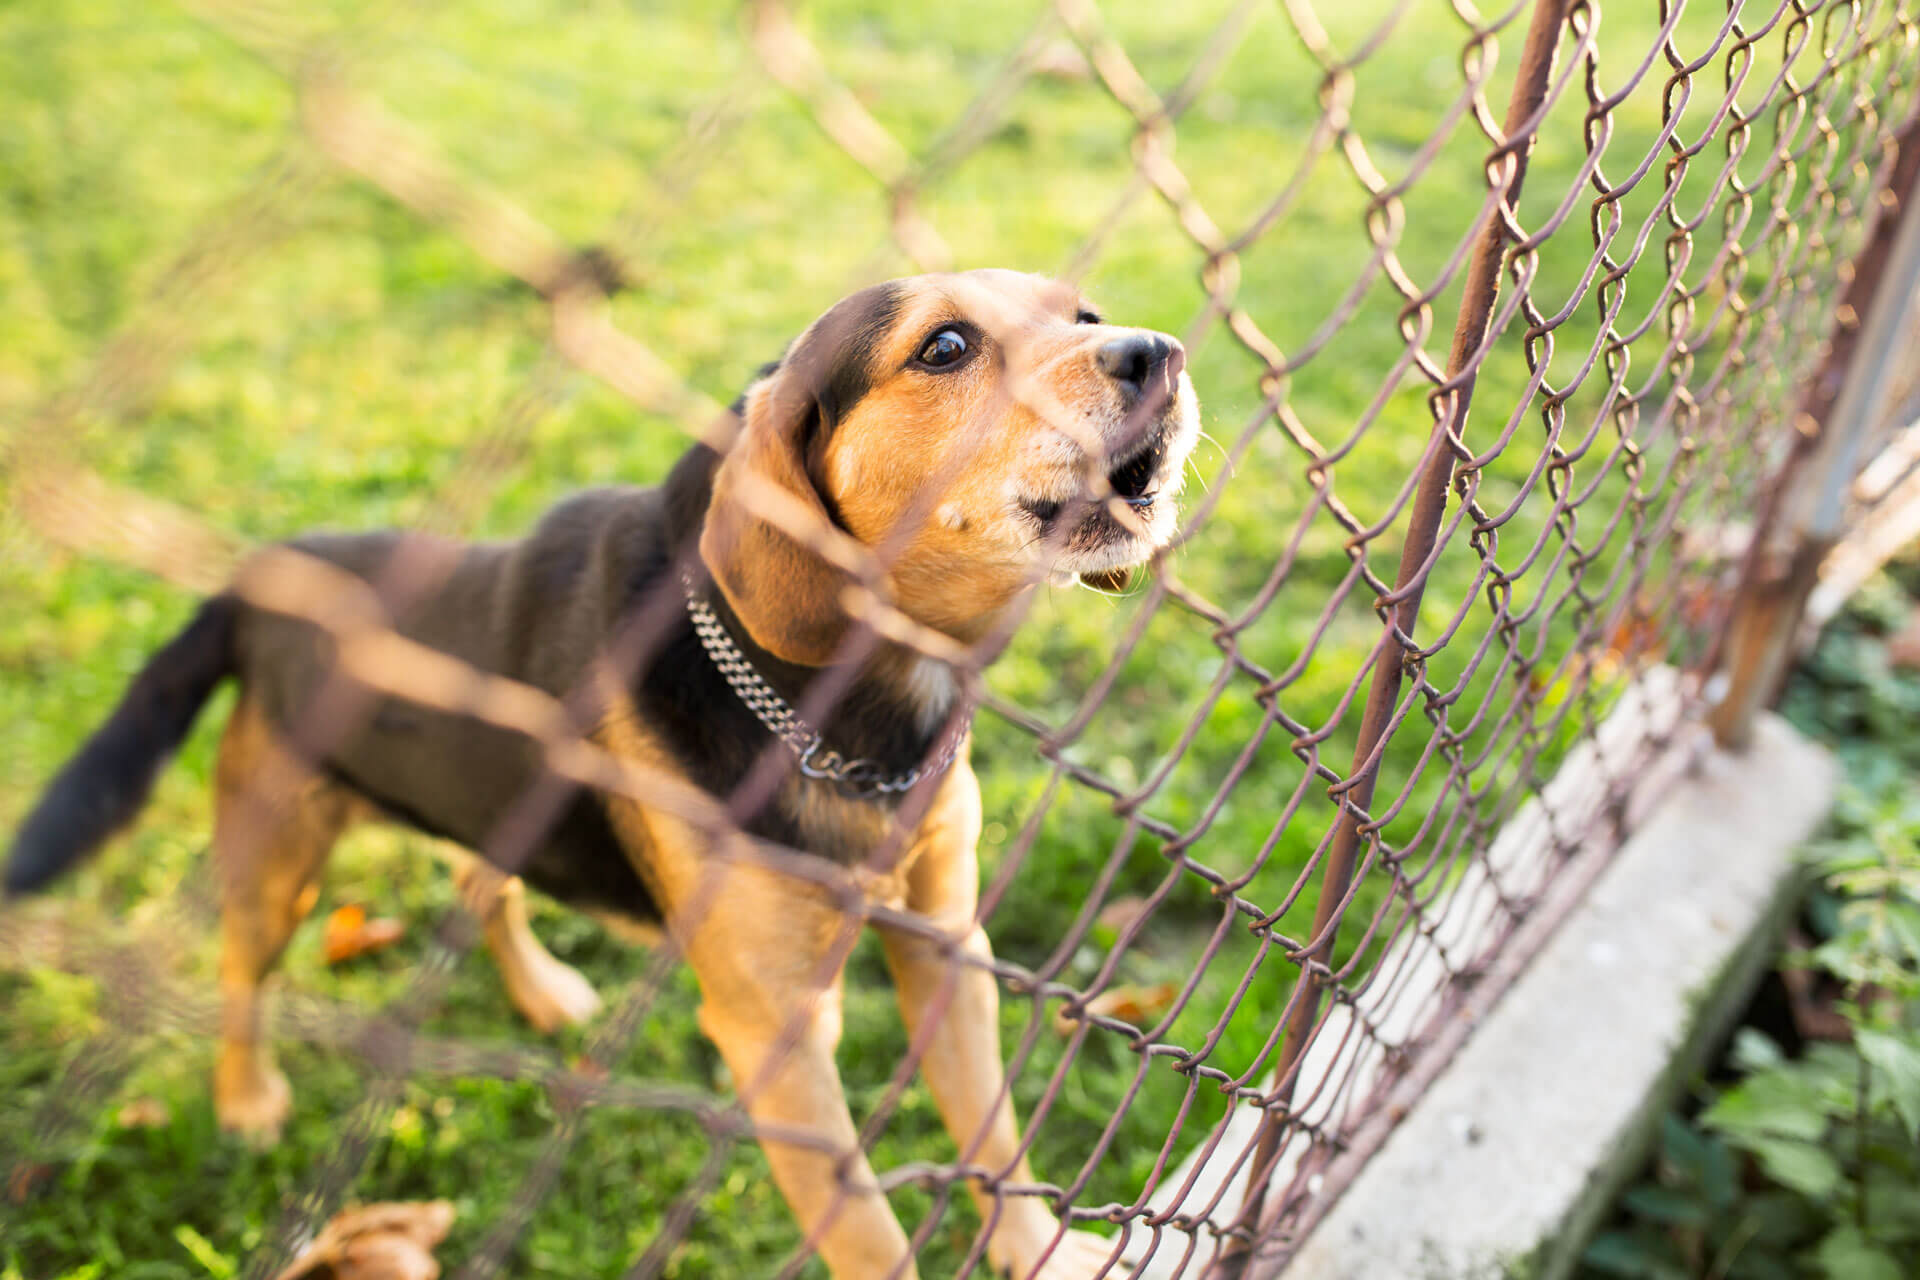 cane nero e marrone abbaia dietro un recinto a rete metallica